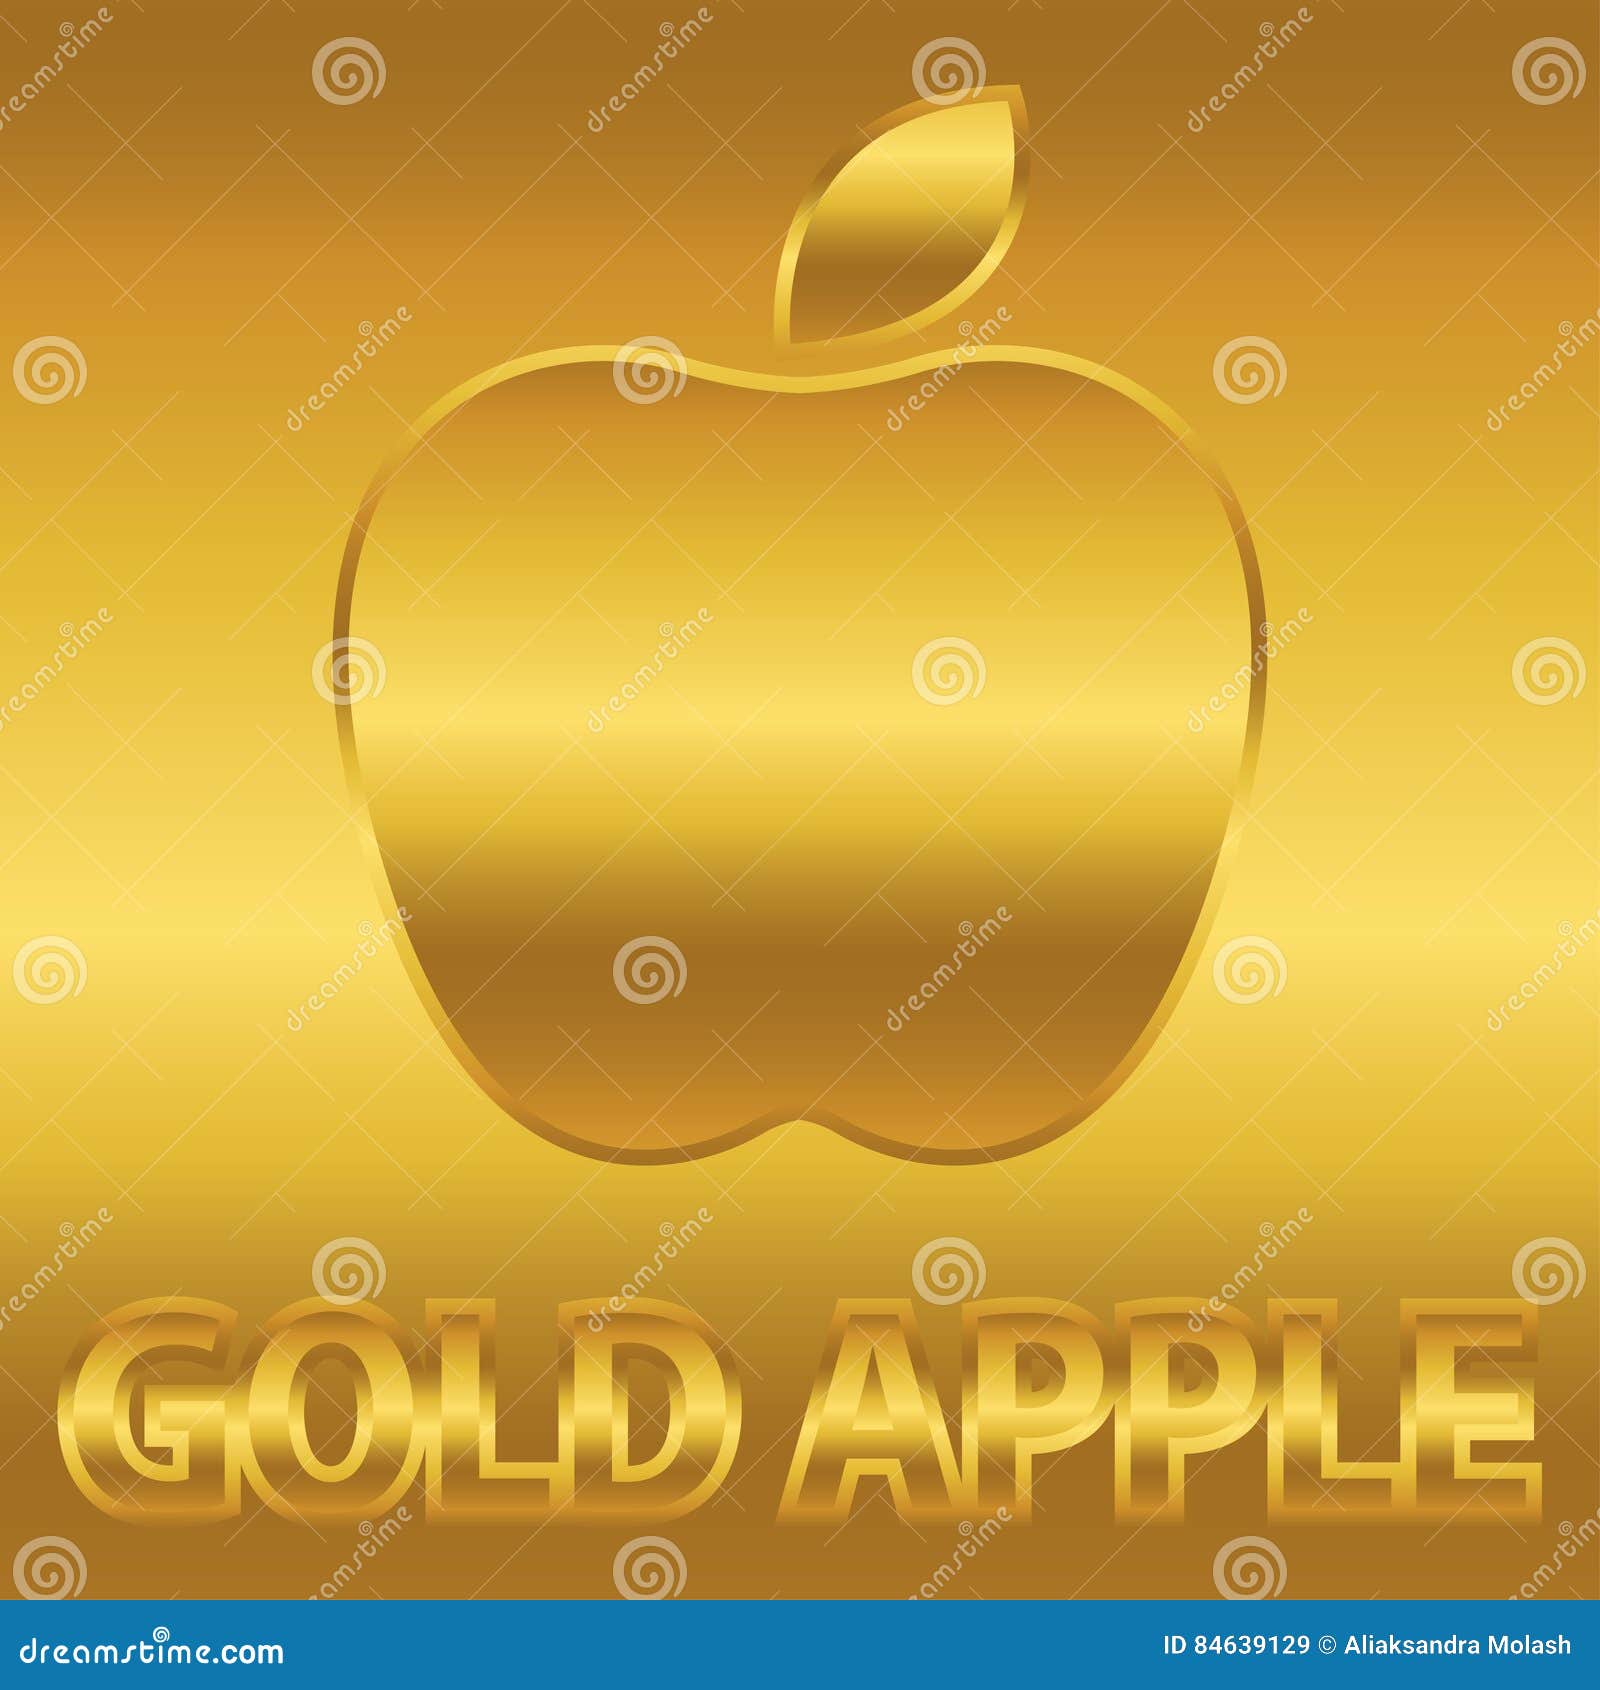 Надпись золотое яблоко. Золотое яблоко. Золотой Apple. Золотое яблоко символ. Gold Apple логотип.